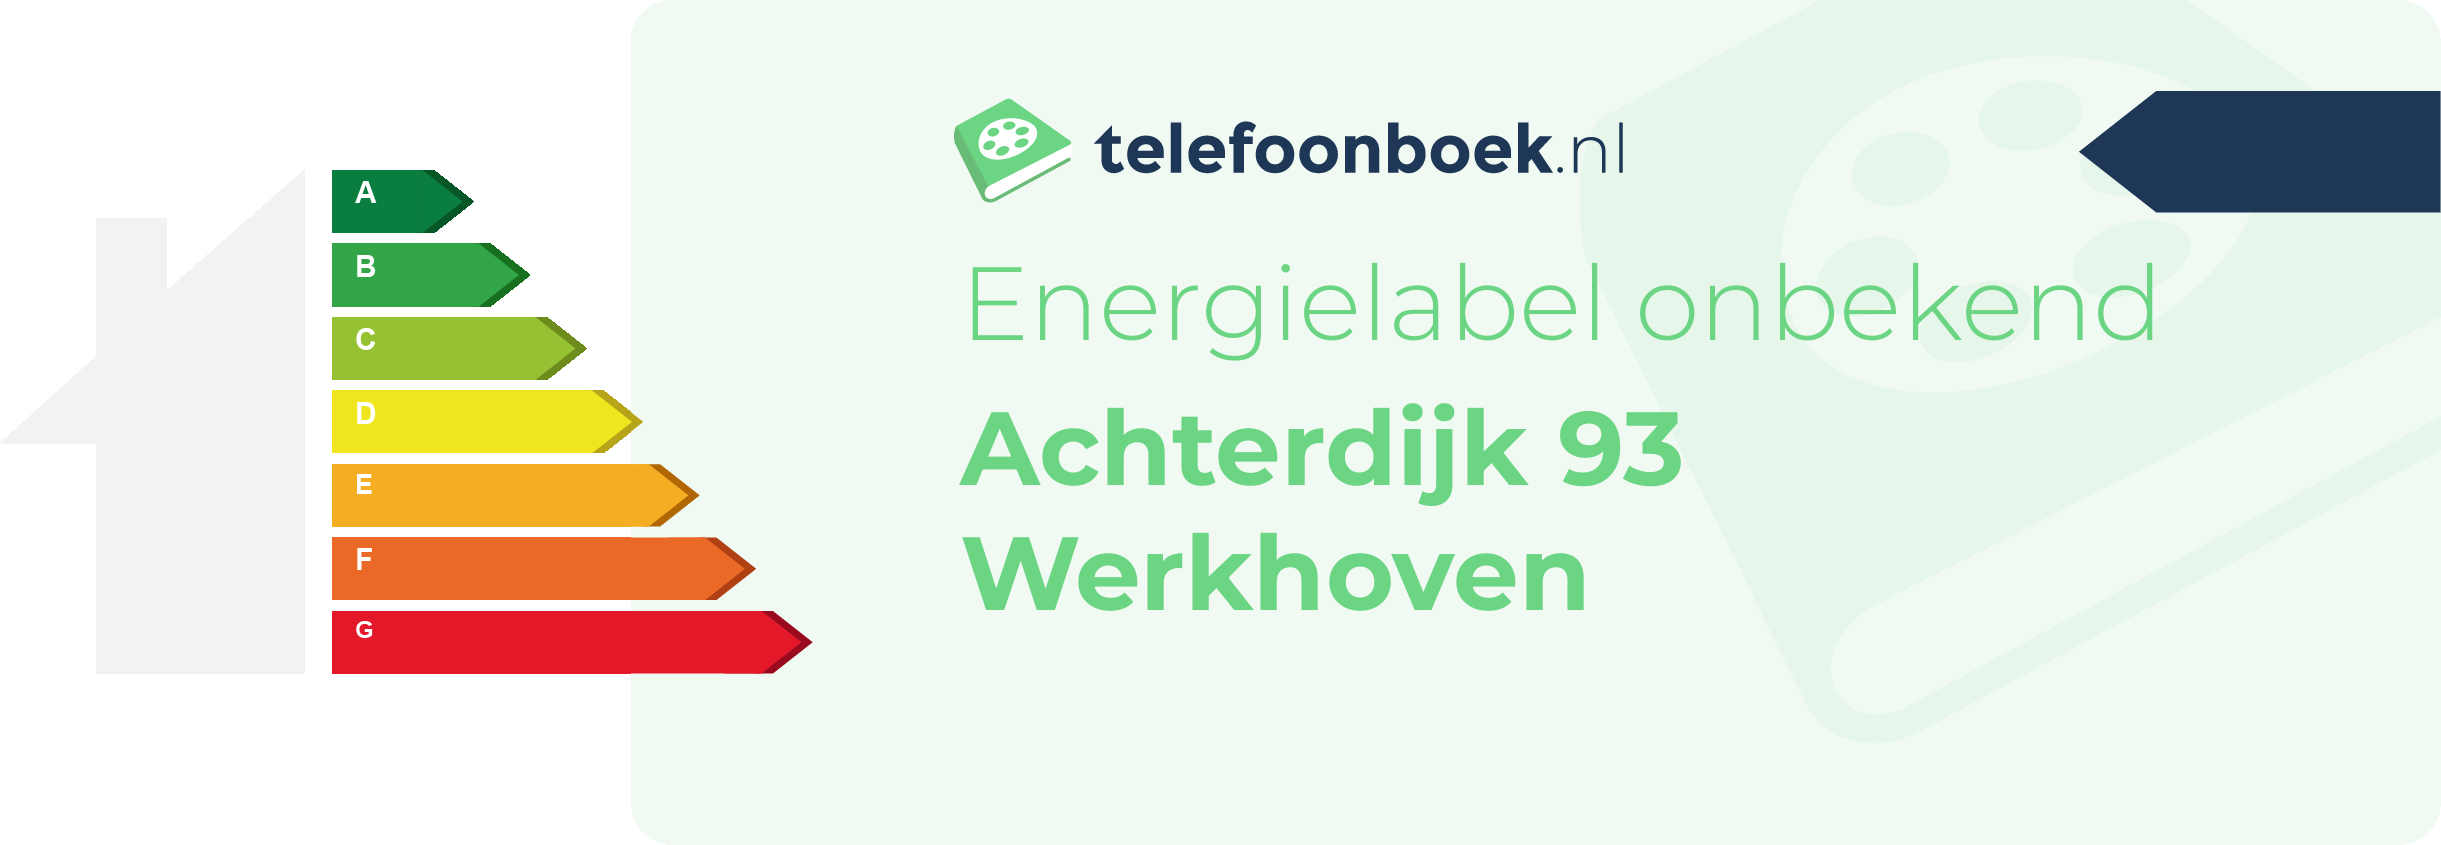 Energielabel Achterdijk 93 Werkhoven